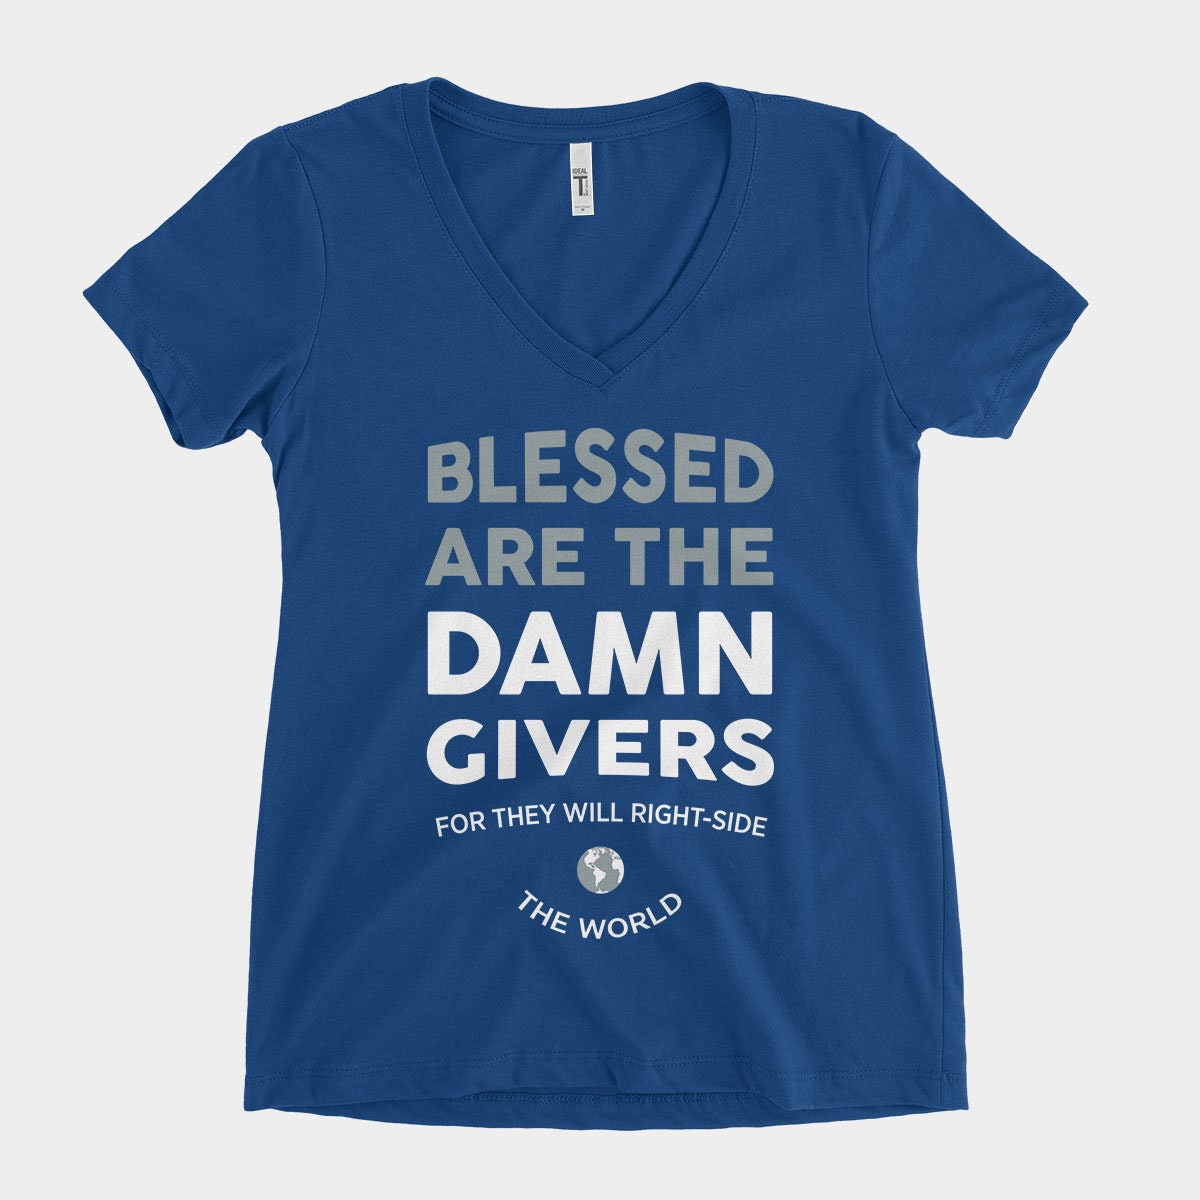 Damn Givers - Women's V-Neck Tee